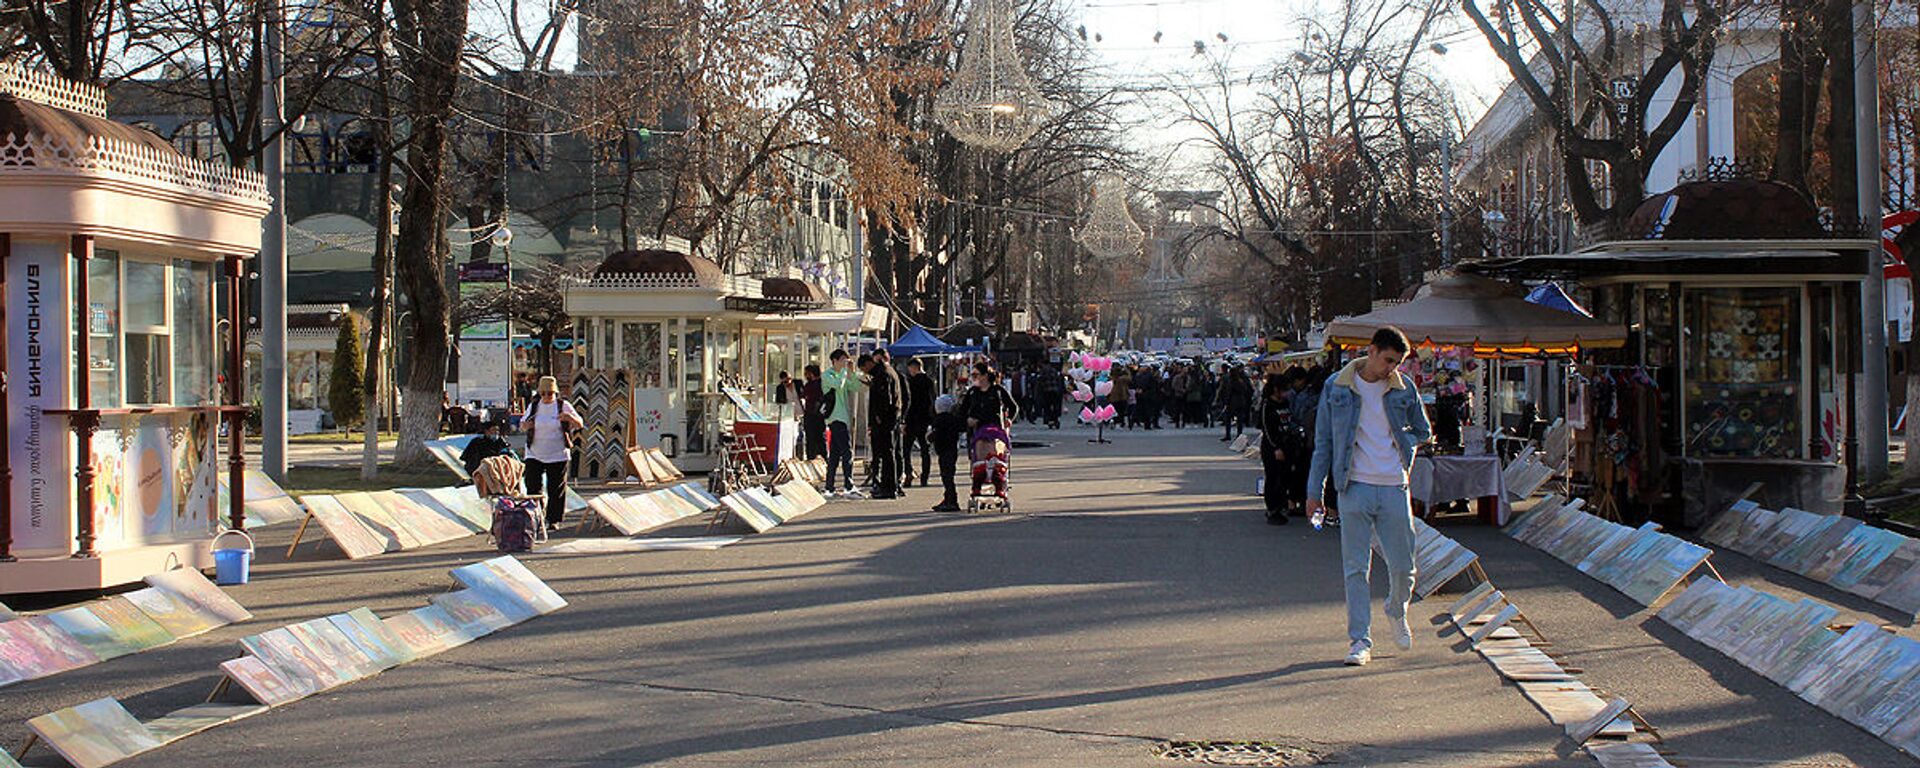 На улицах города уже много людей - жители гуляют с детьми, отдыхают и ждут весну. - Sputnik Узбекистан, 1920, 13.02.2021